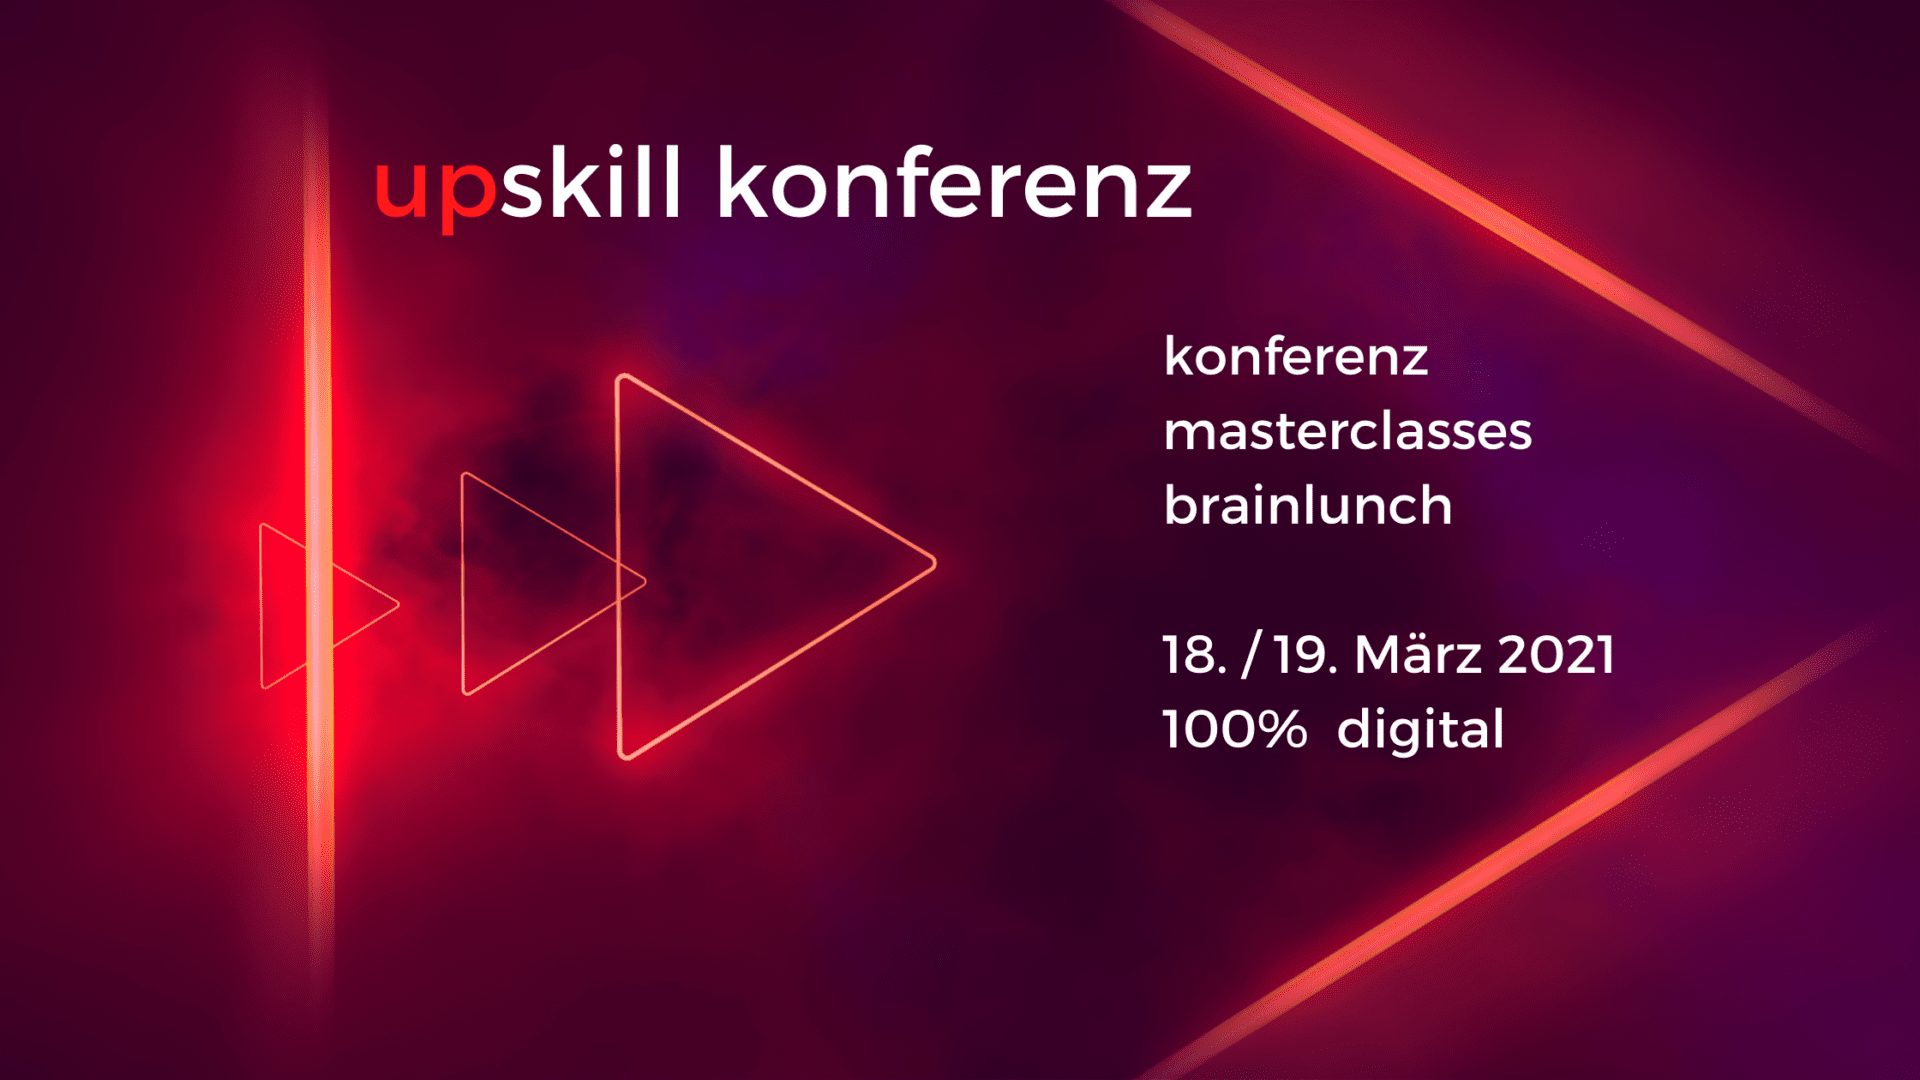 UpSkill Konferenz: Ein Talk mit Gründer Andreas